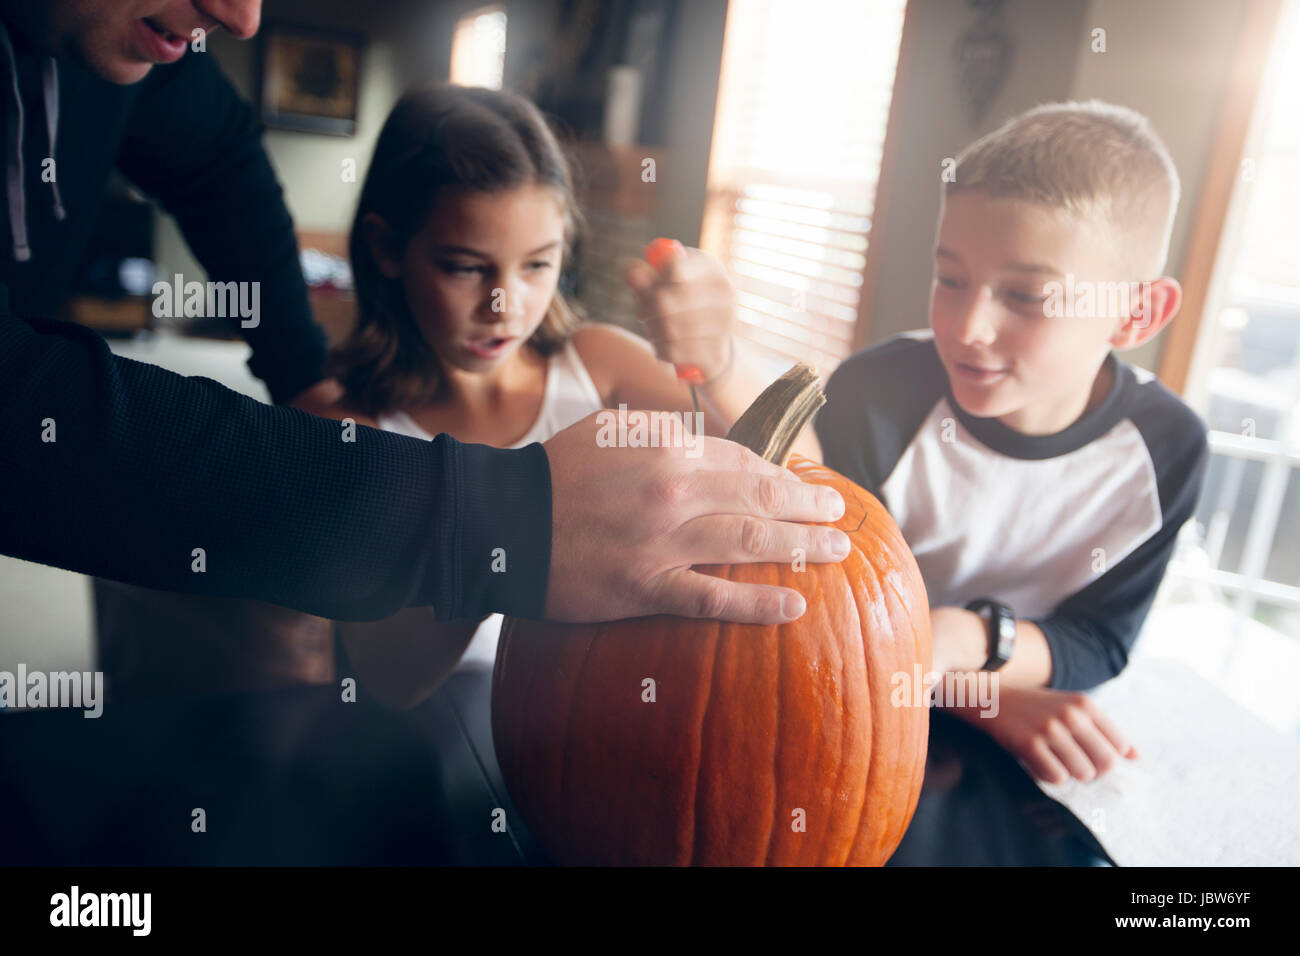 Le père et les enfants pumpkin carving Banque D'Images